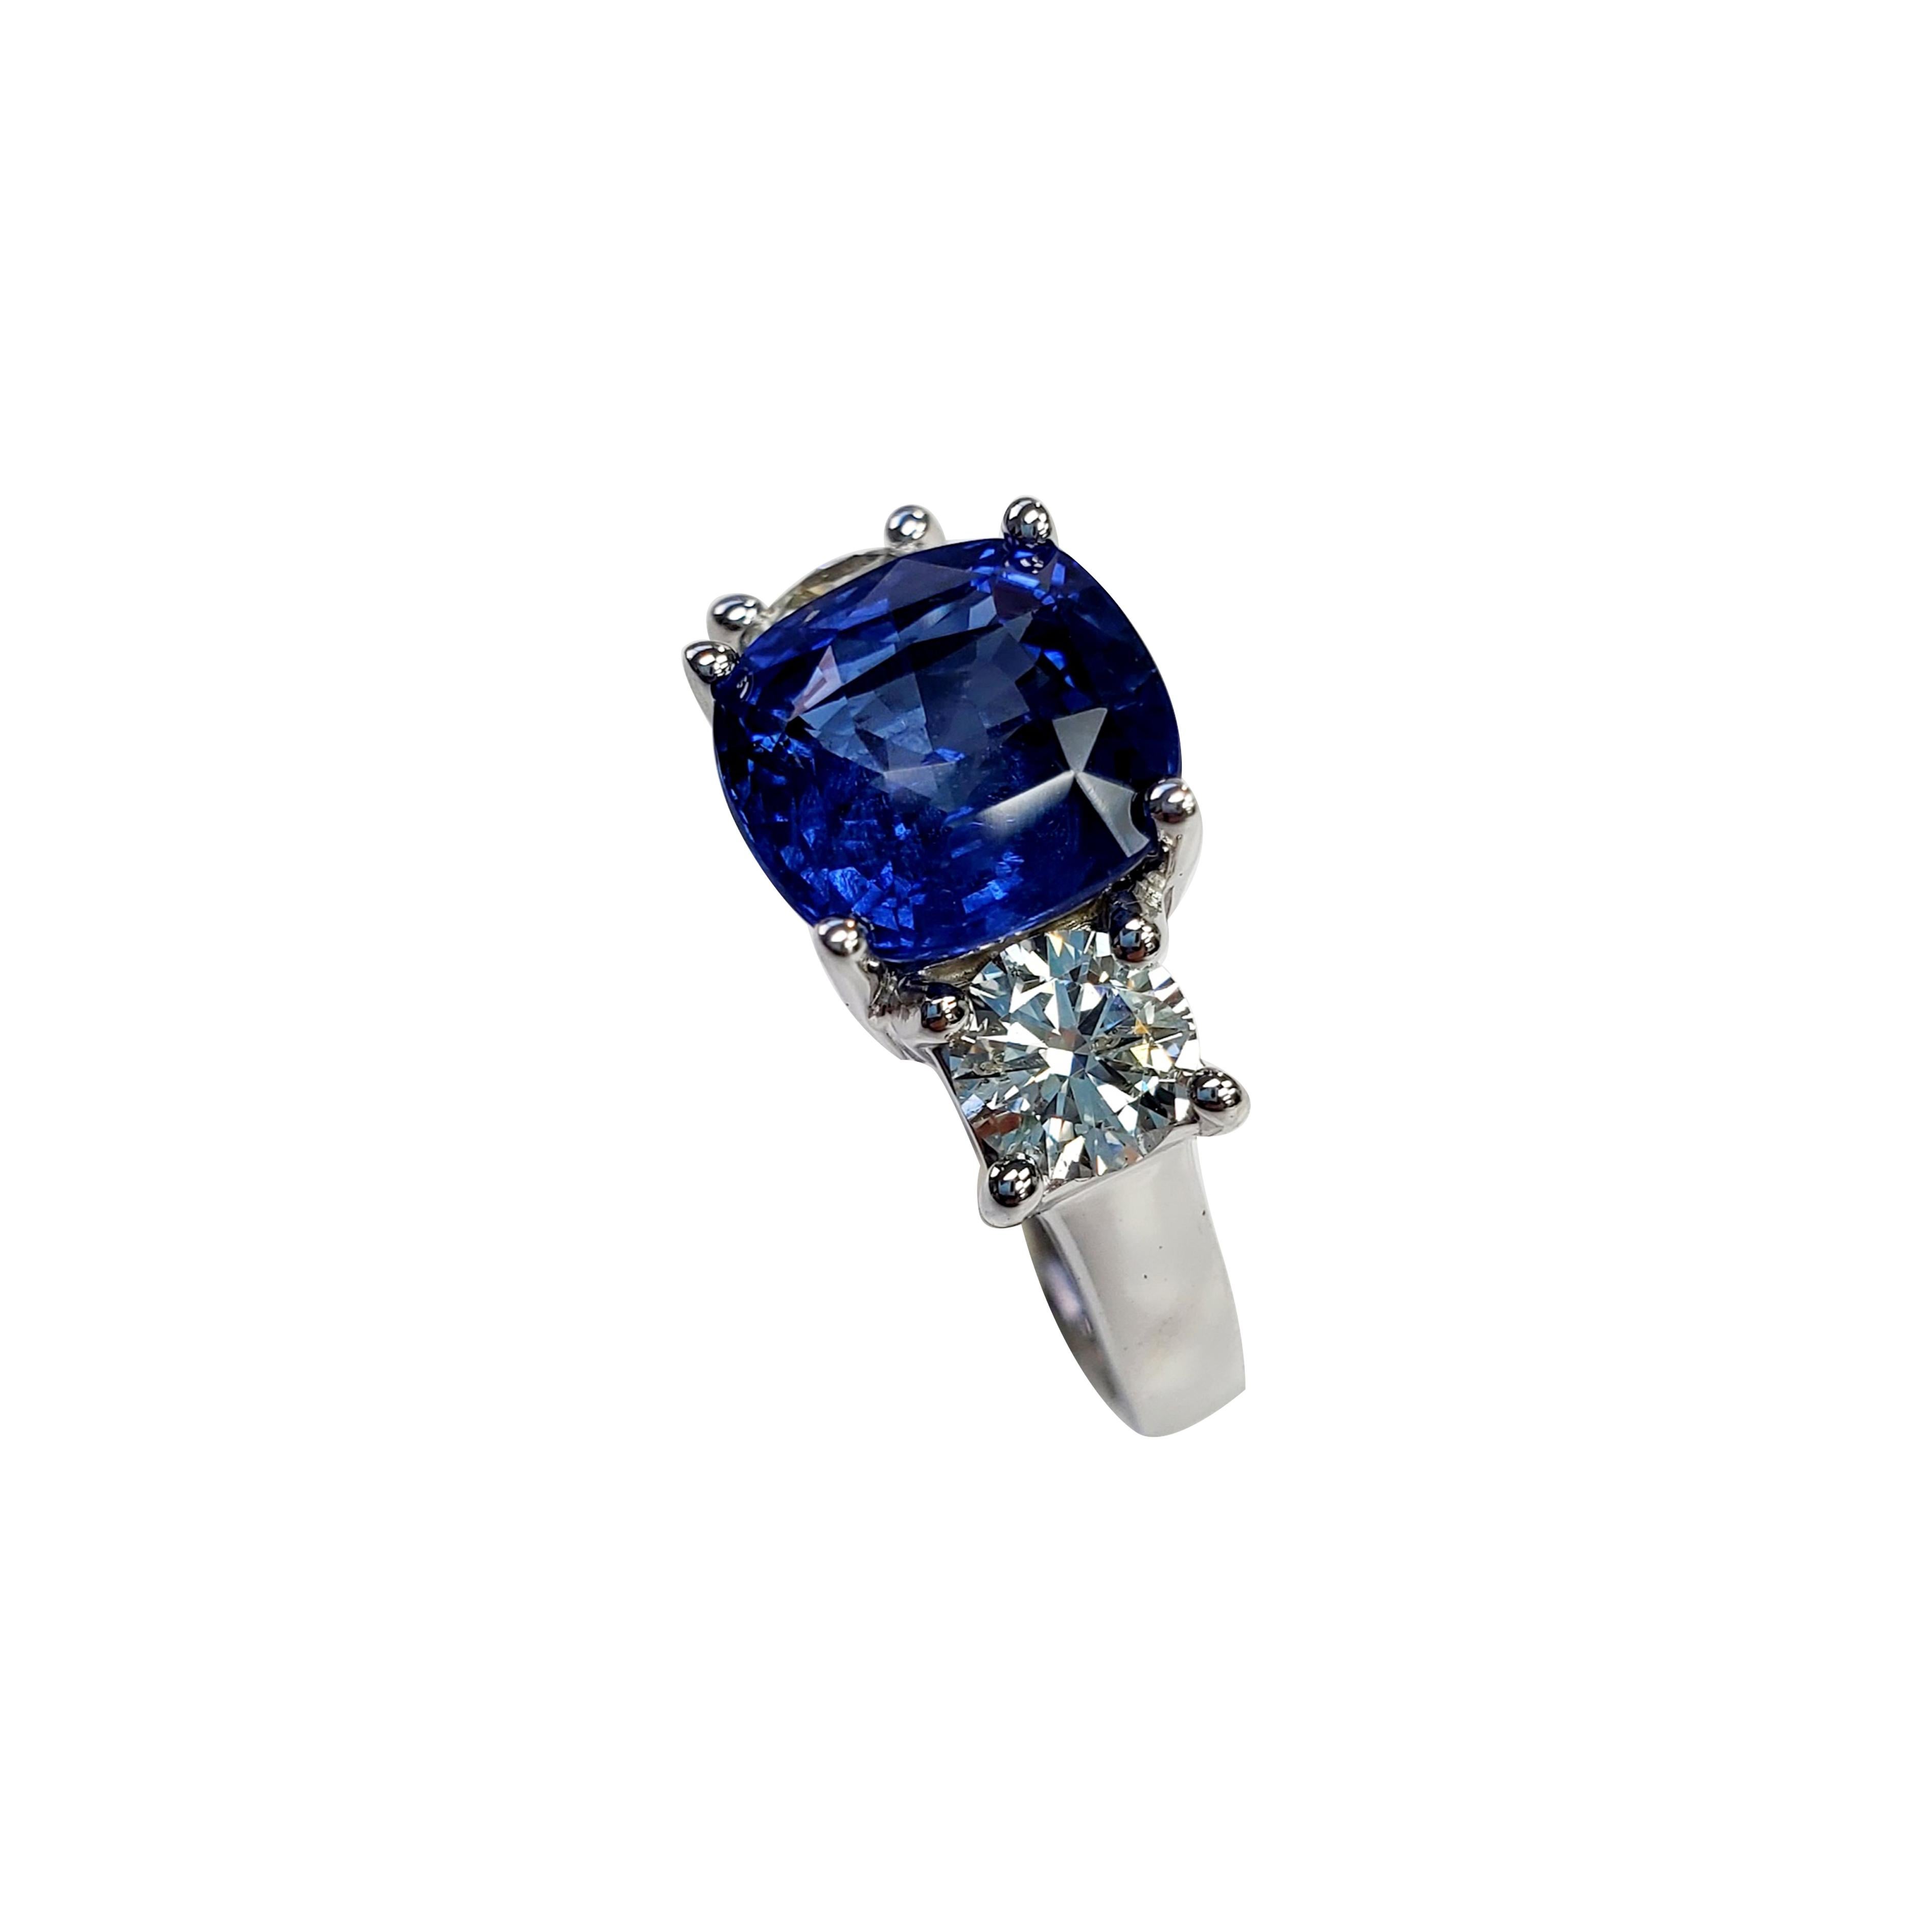 Sapphire - 4.31ct

White Diamond - 0.95ct

Platinum Ring